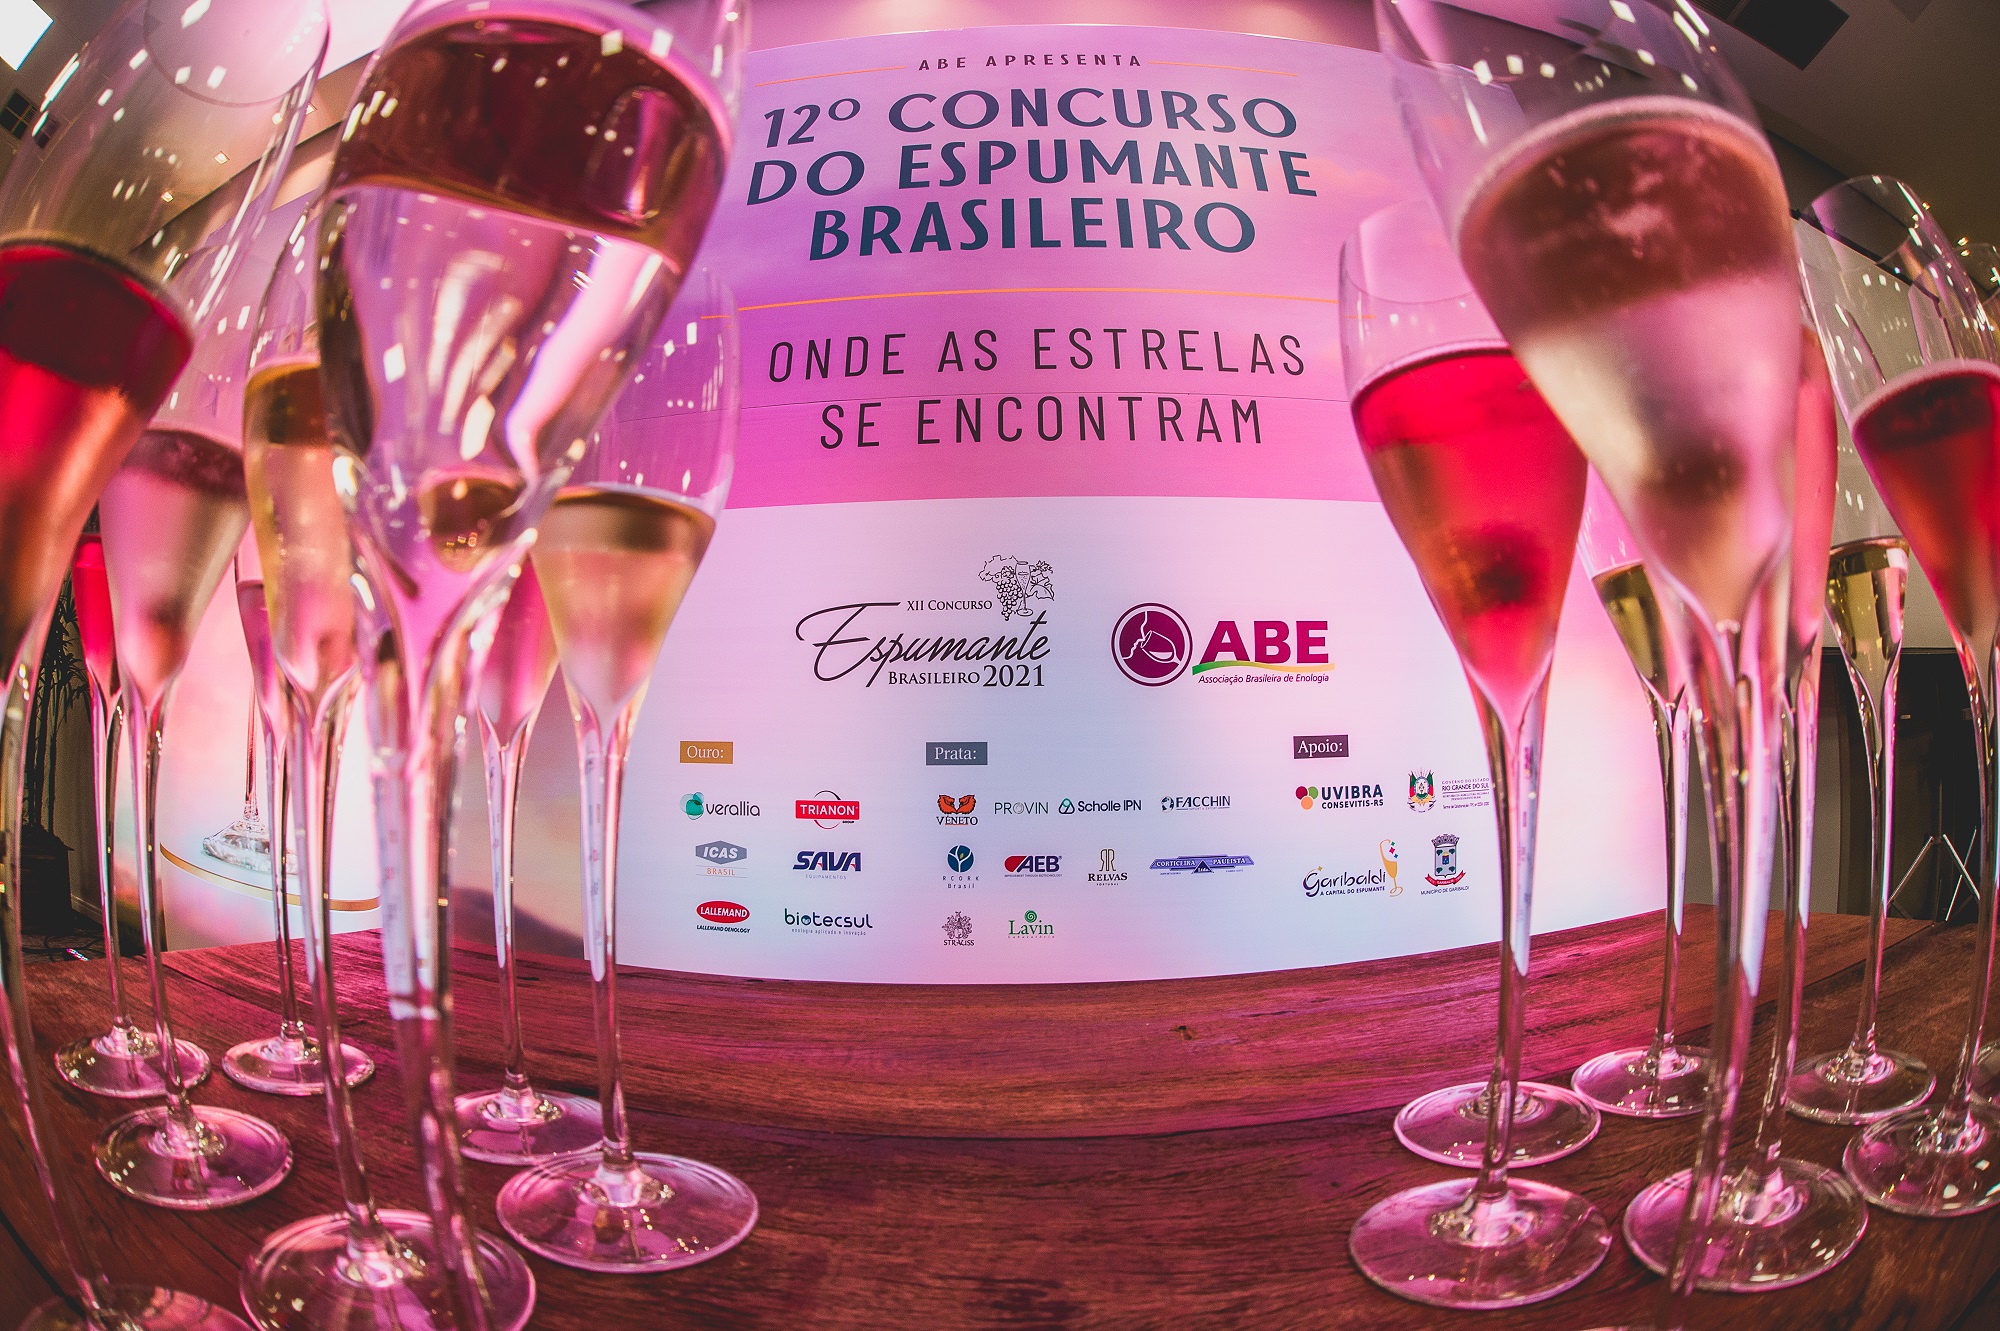 Concurso do Espumante Brasileiro premia 134 espumantes | Portal Leouve -  leia. ouça. veja.